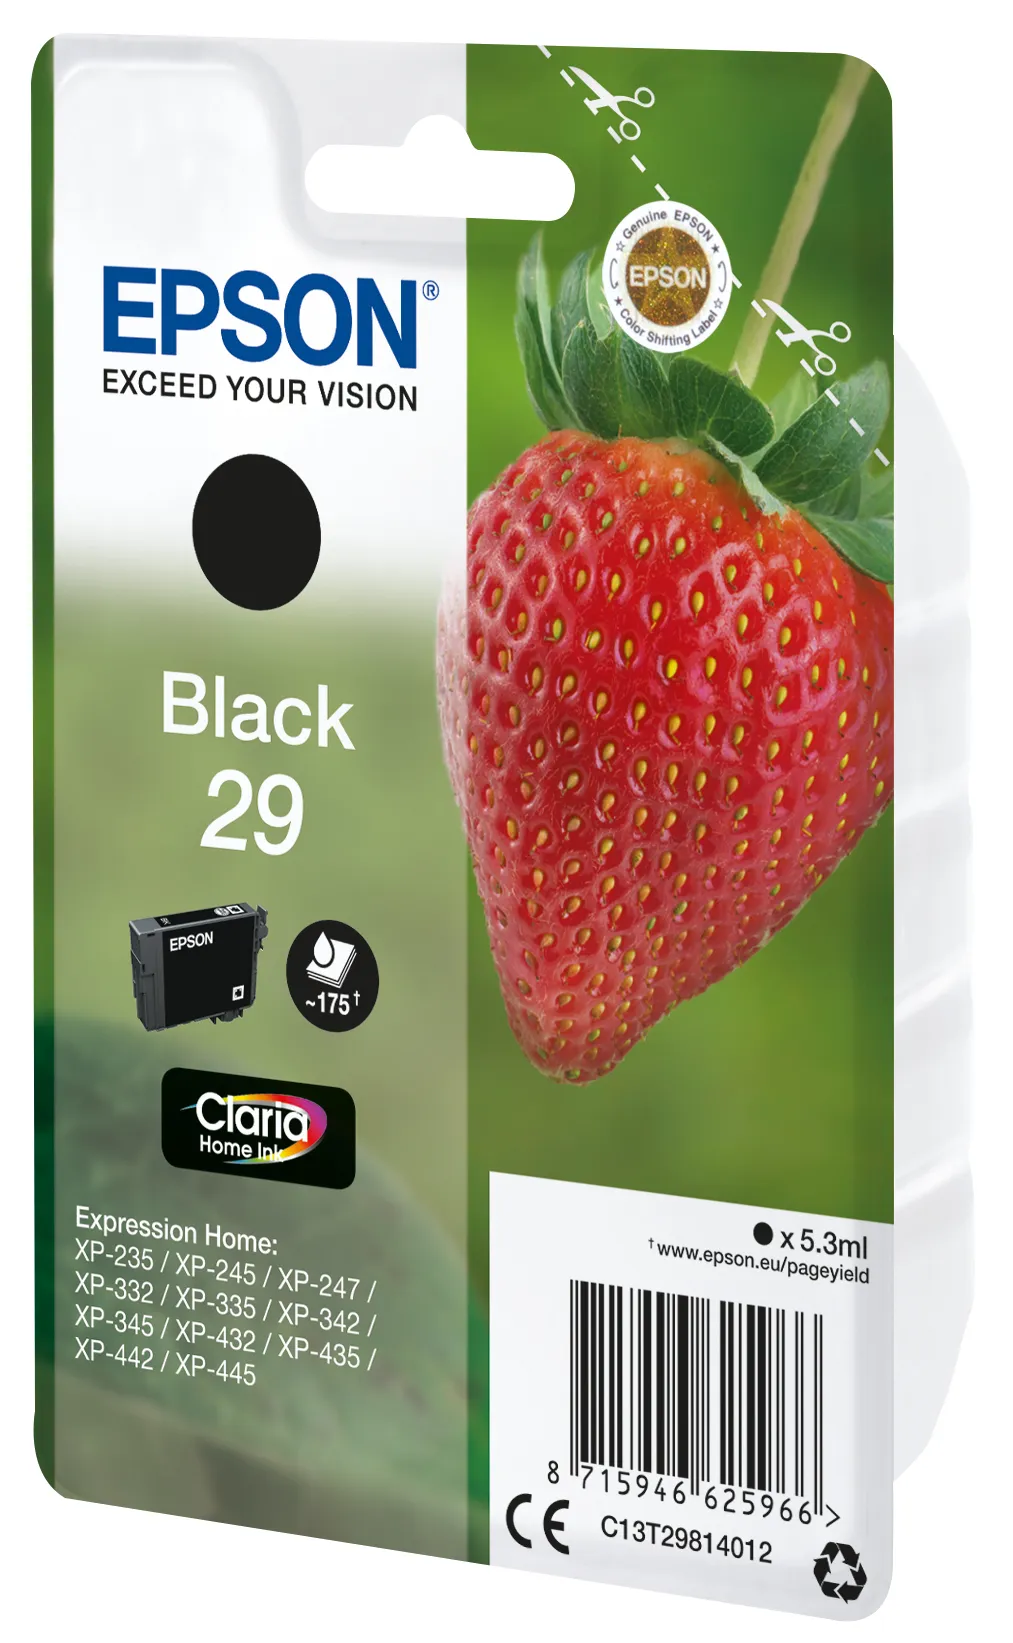 Vente EPSON Cartouche Fraise Encre Claria Home Noir avec Epson au meilleur prix - visuel 4